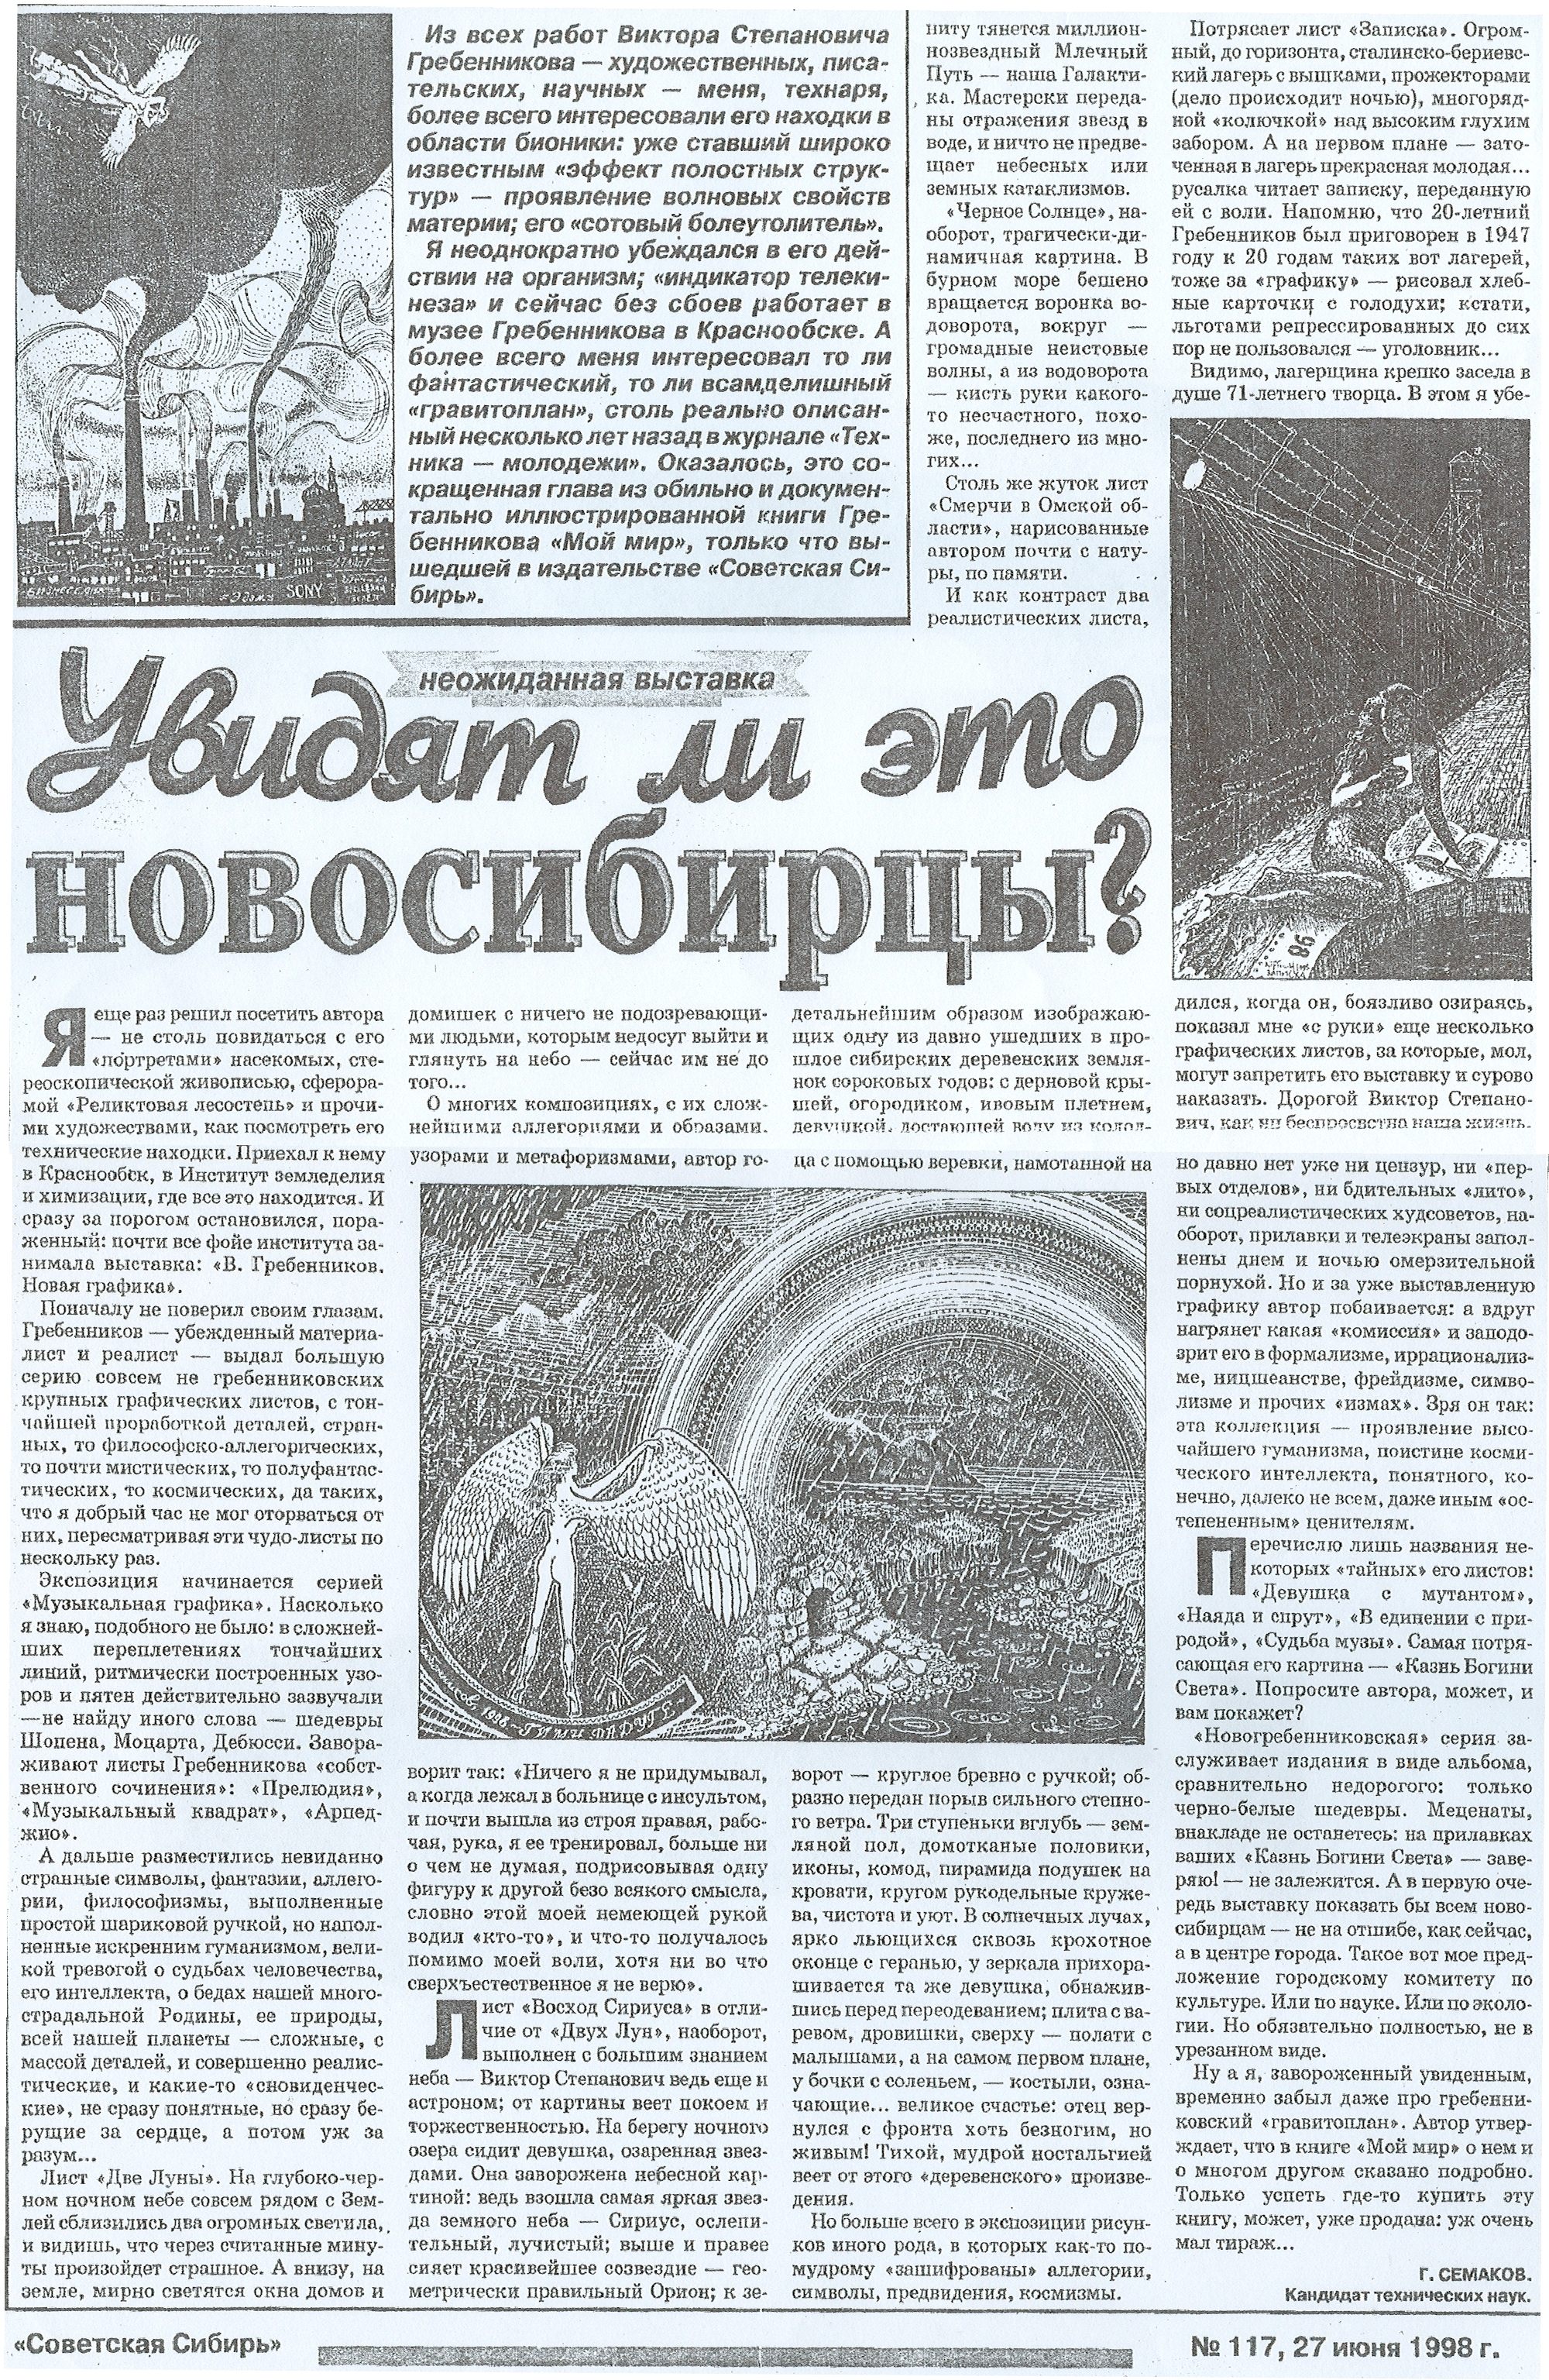 Увидят ли это новосибирцы? Г. Семаков. Советская Сибирь, №117, 27.06.1998, с.8